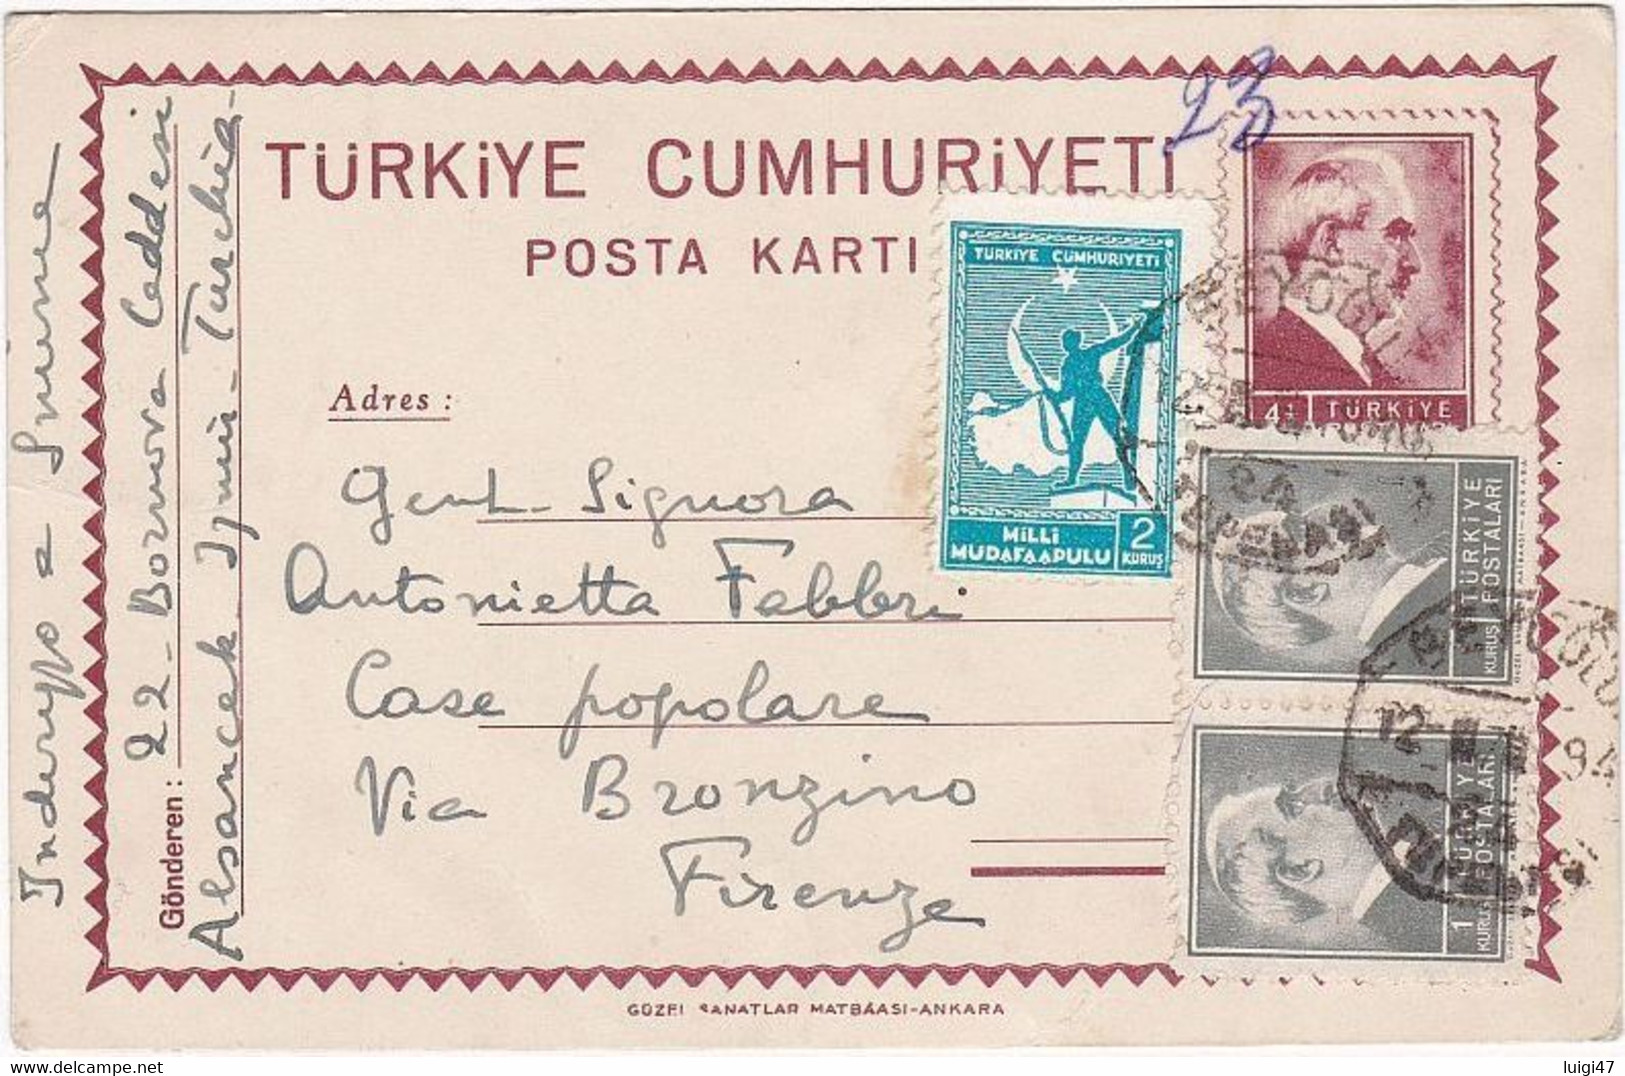 1946 - Turchia - Cartolina Postale Con Affrancatura Complementare - Lettres & Documents